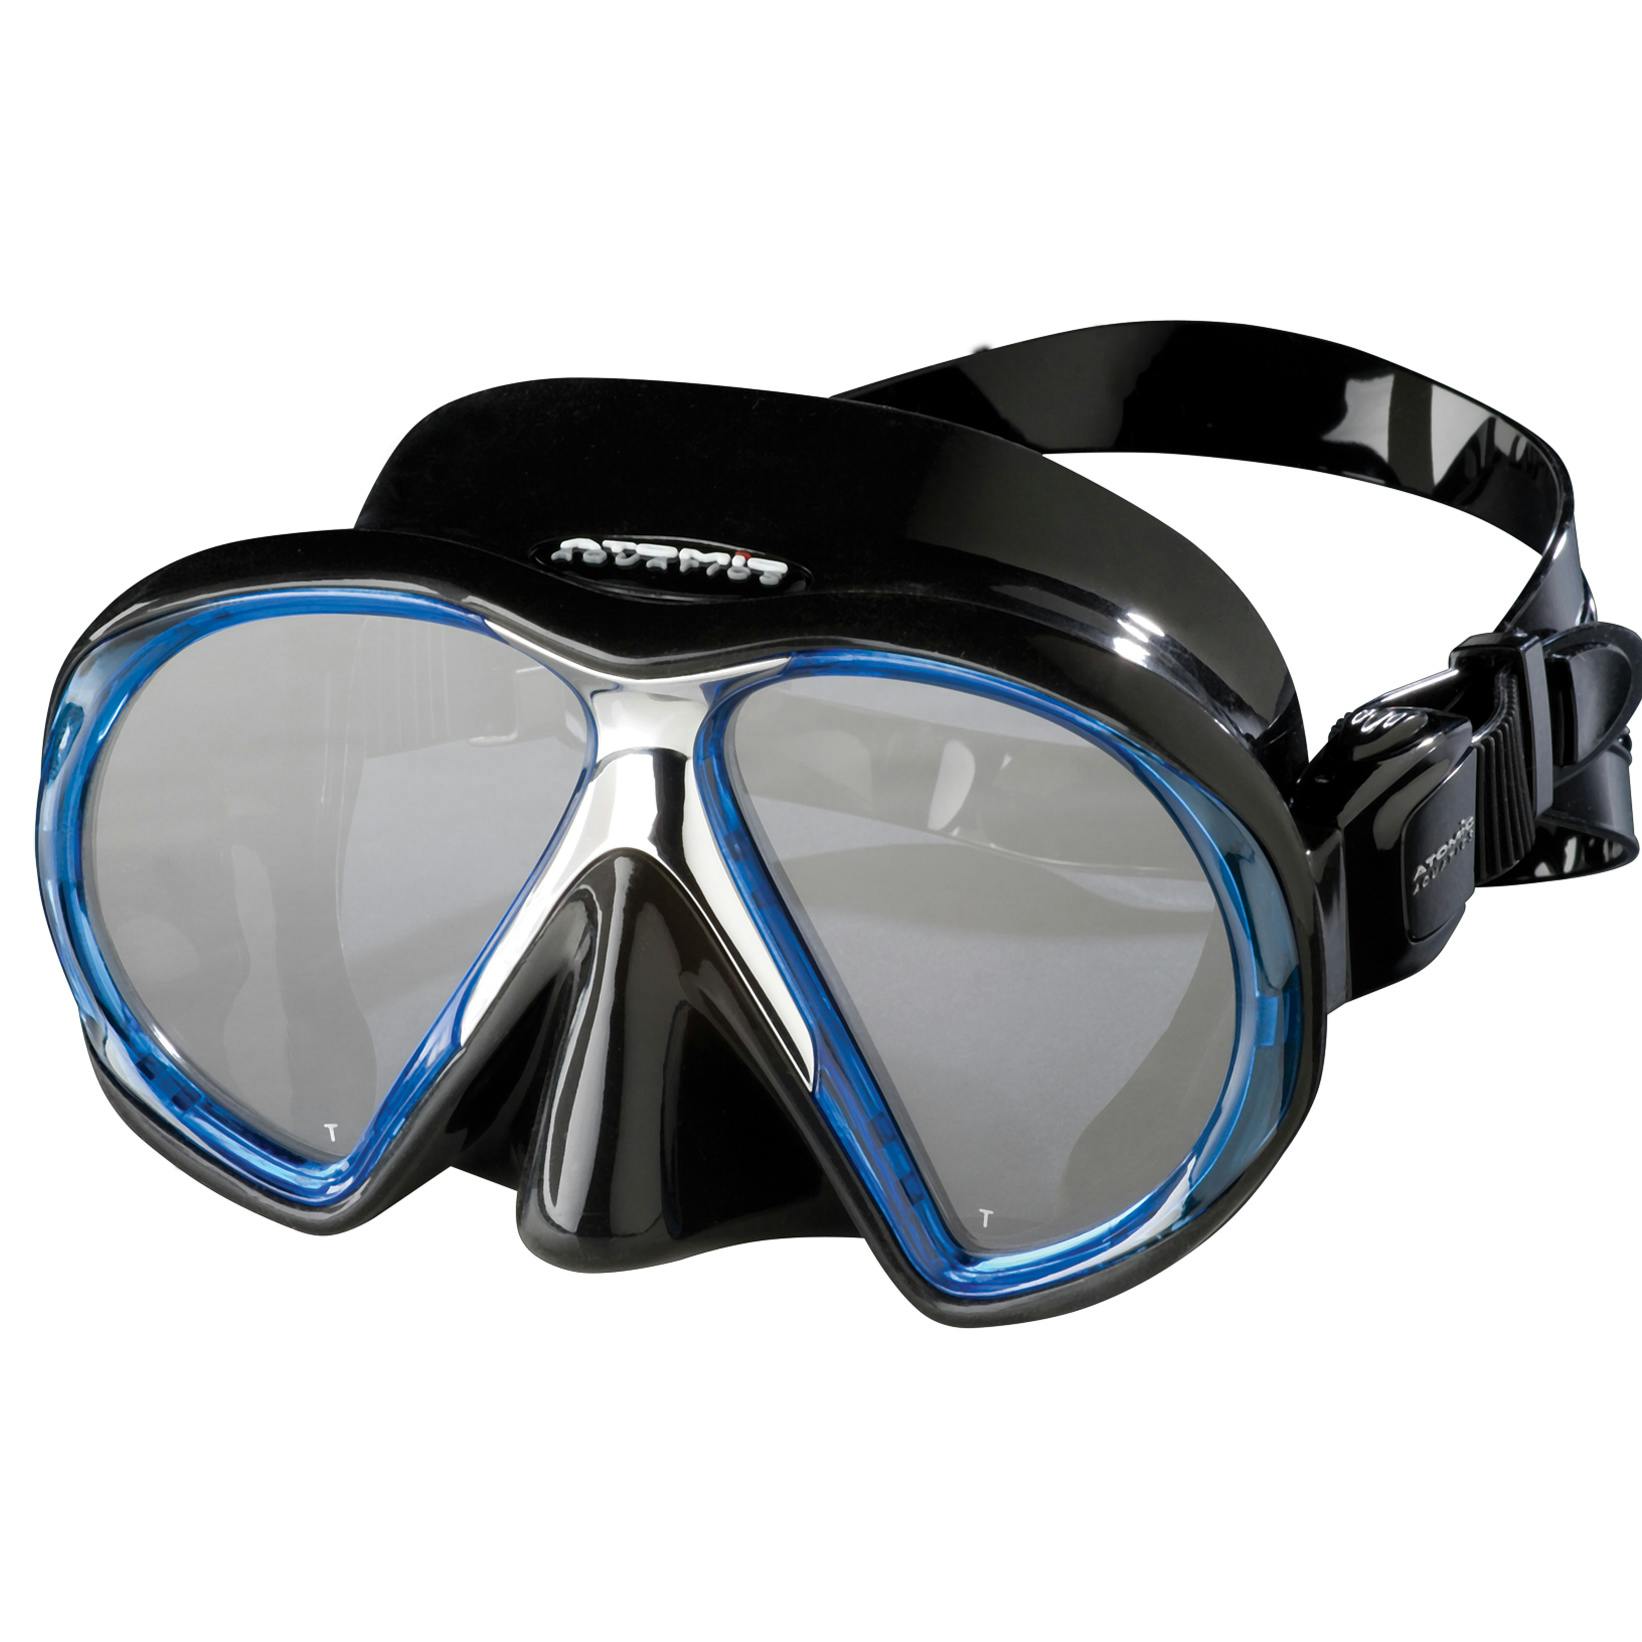 Atomic SubFrame Mask, Two Lens (Regular Fit) - Black/Blue